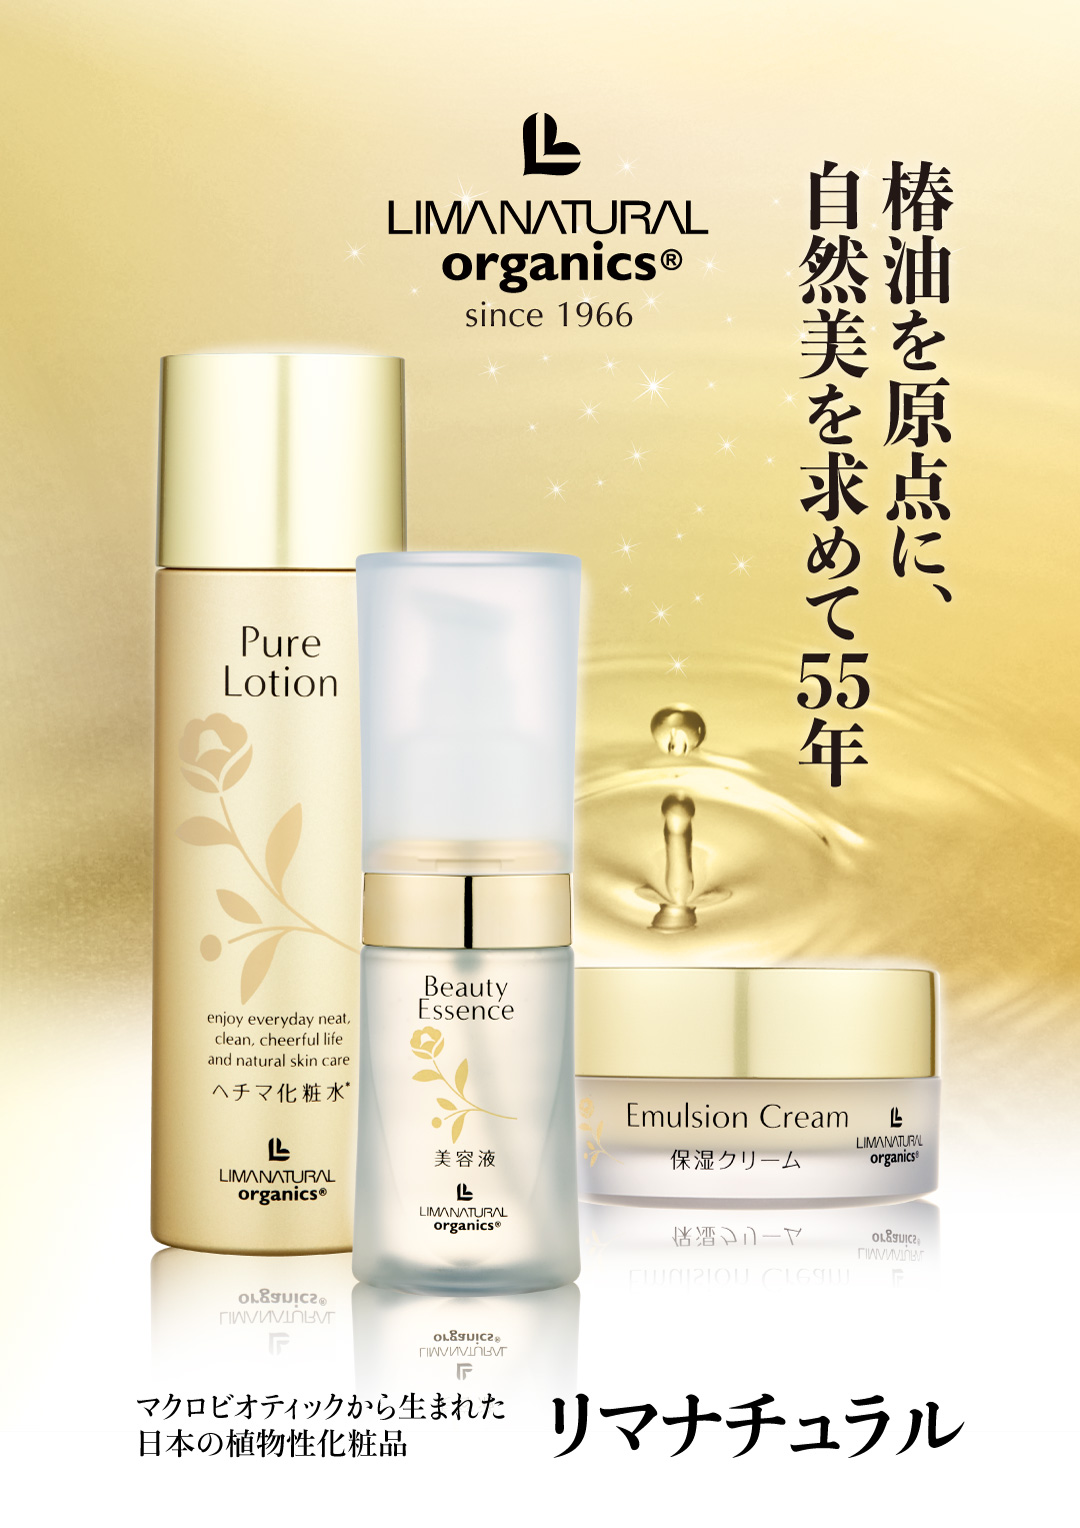 リマナチュラルオーガニック公式サイト 日本の植物性化粧品